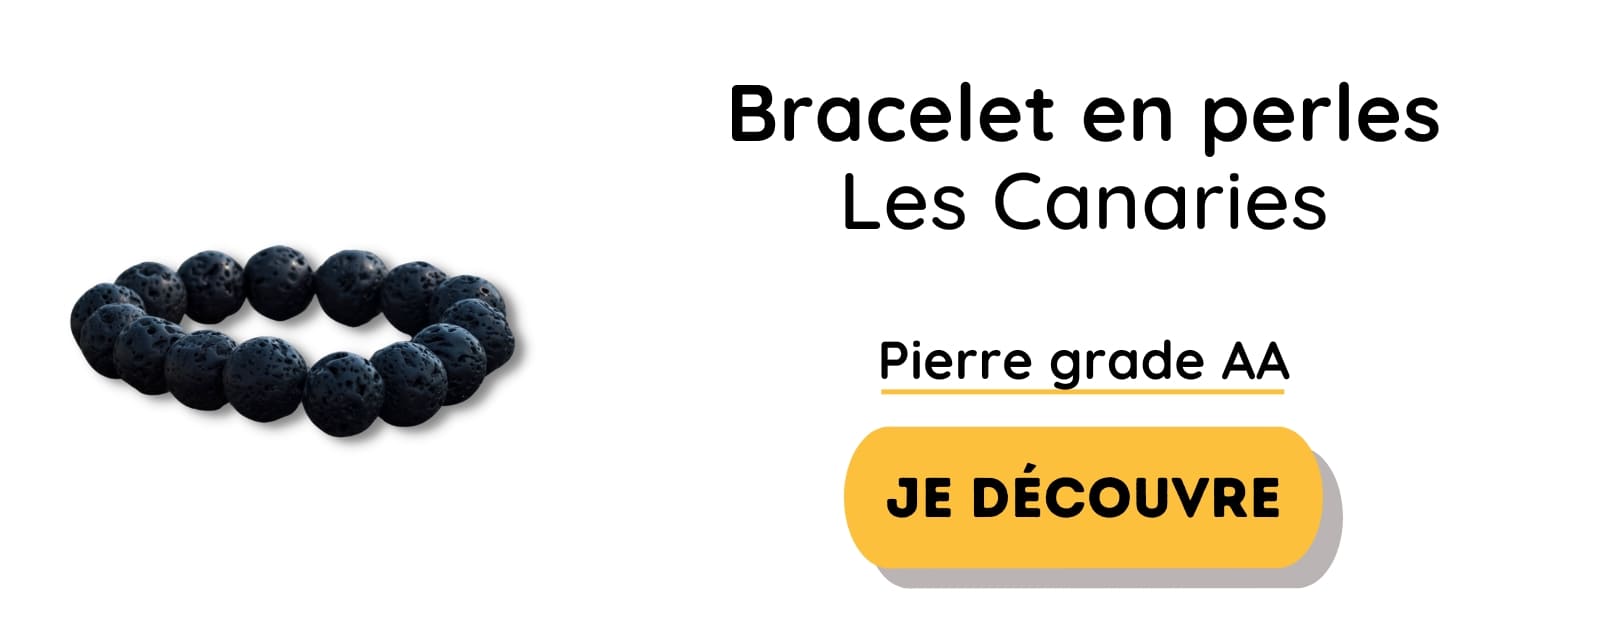 Bracelet Pierre de Lave, Vertus, Signification